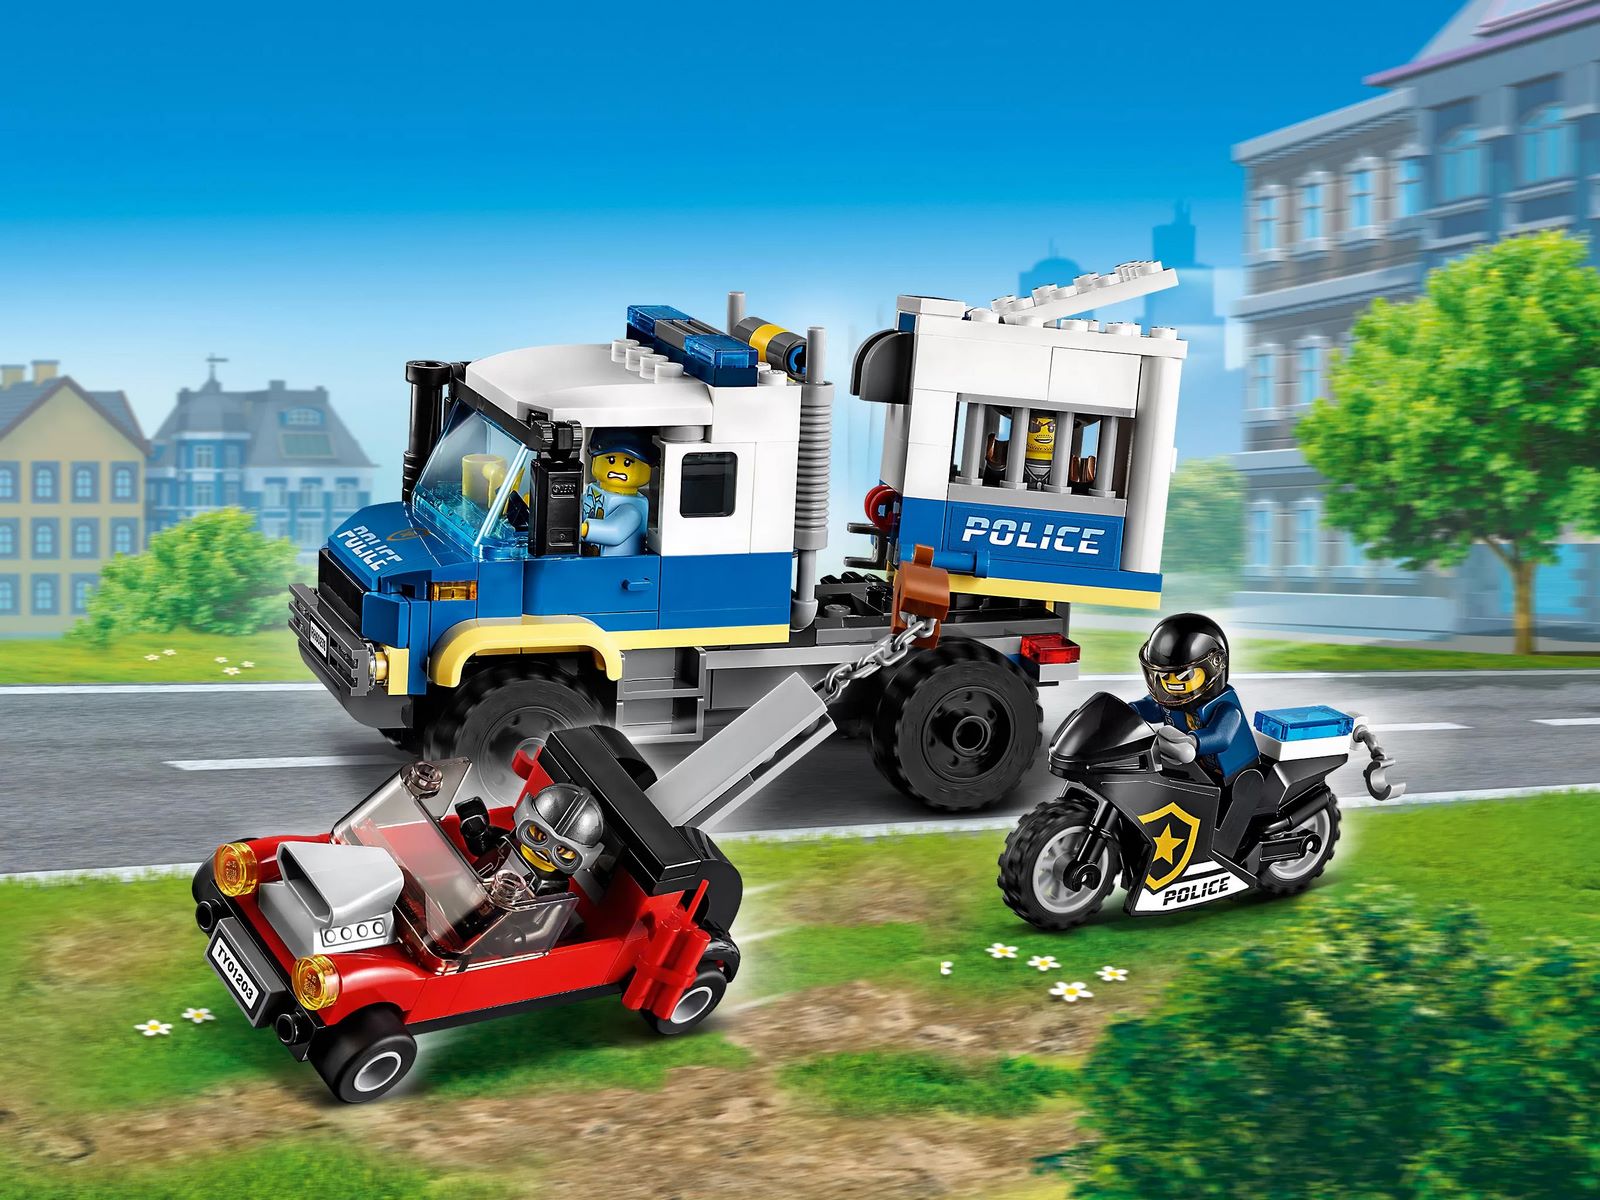 Конструктор LEGO City Police «Транспорт для перевозки преступников» 60276 / 244 деталей